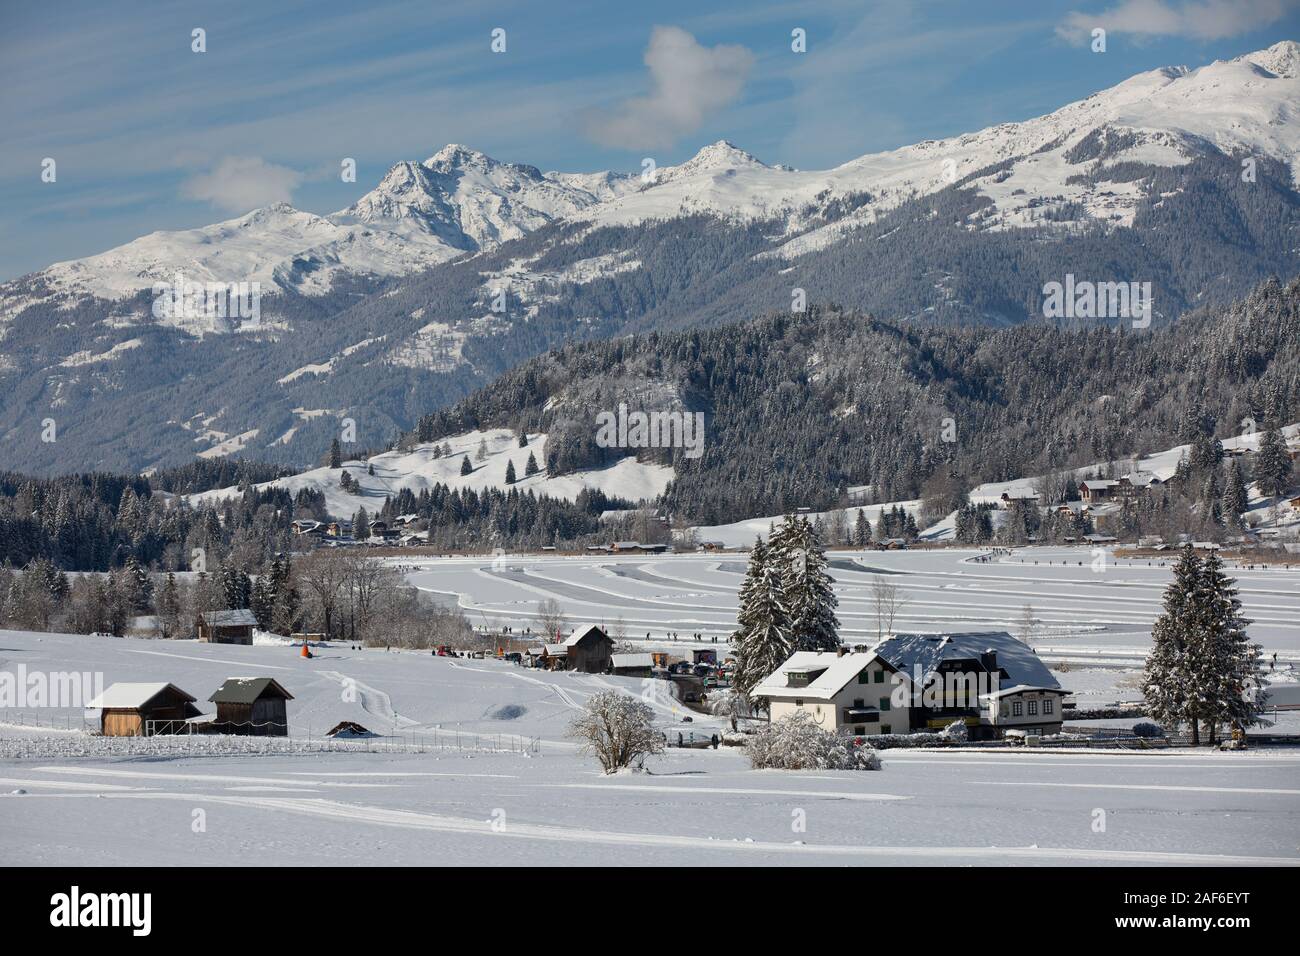 Lago congelado panorama con montañas cubiertas de nieve y bosques. La gente patinar y caminar sobre el lago congelado Weissensee, Carintia, Alpes, Austria Foto de stock